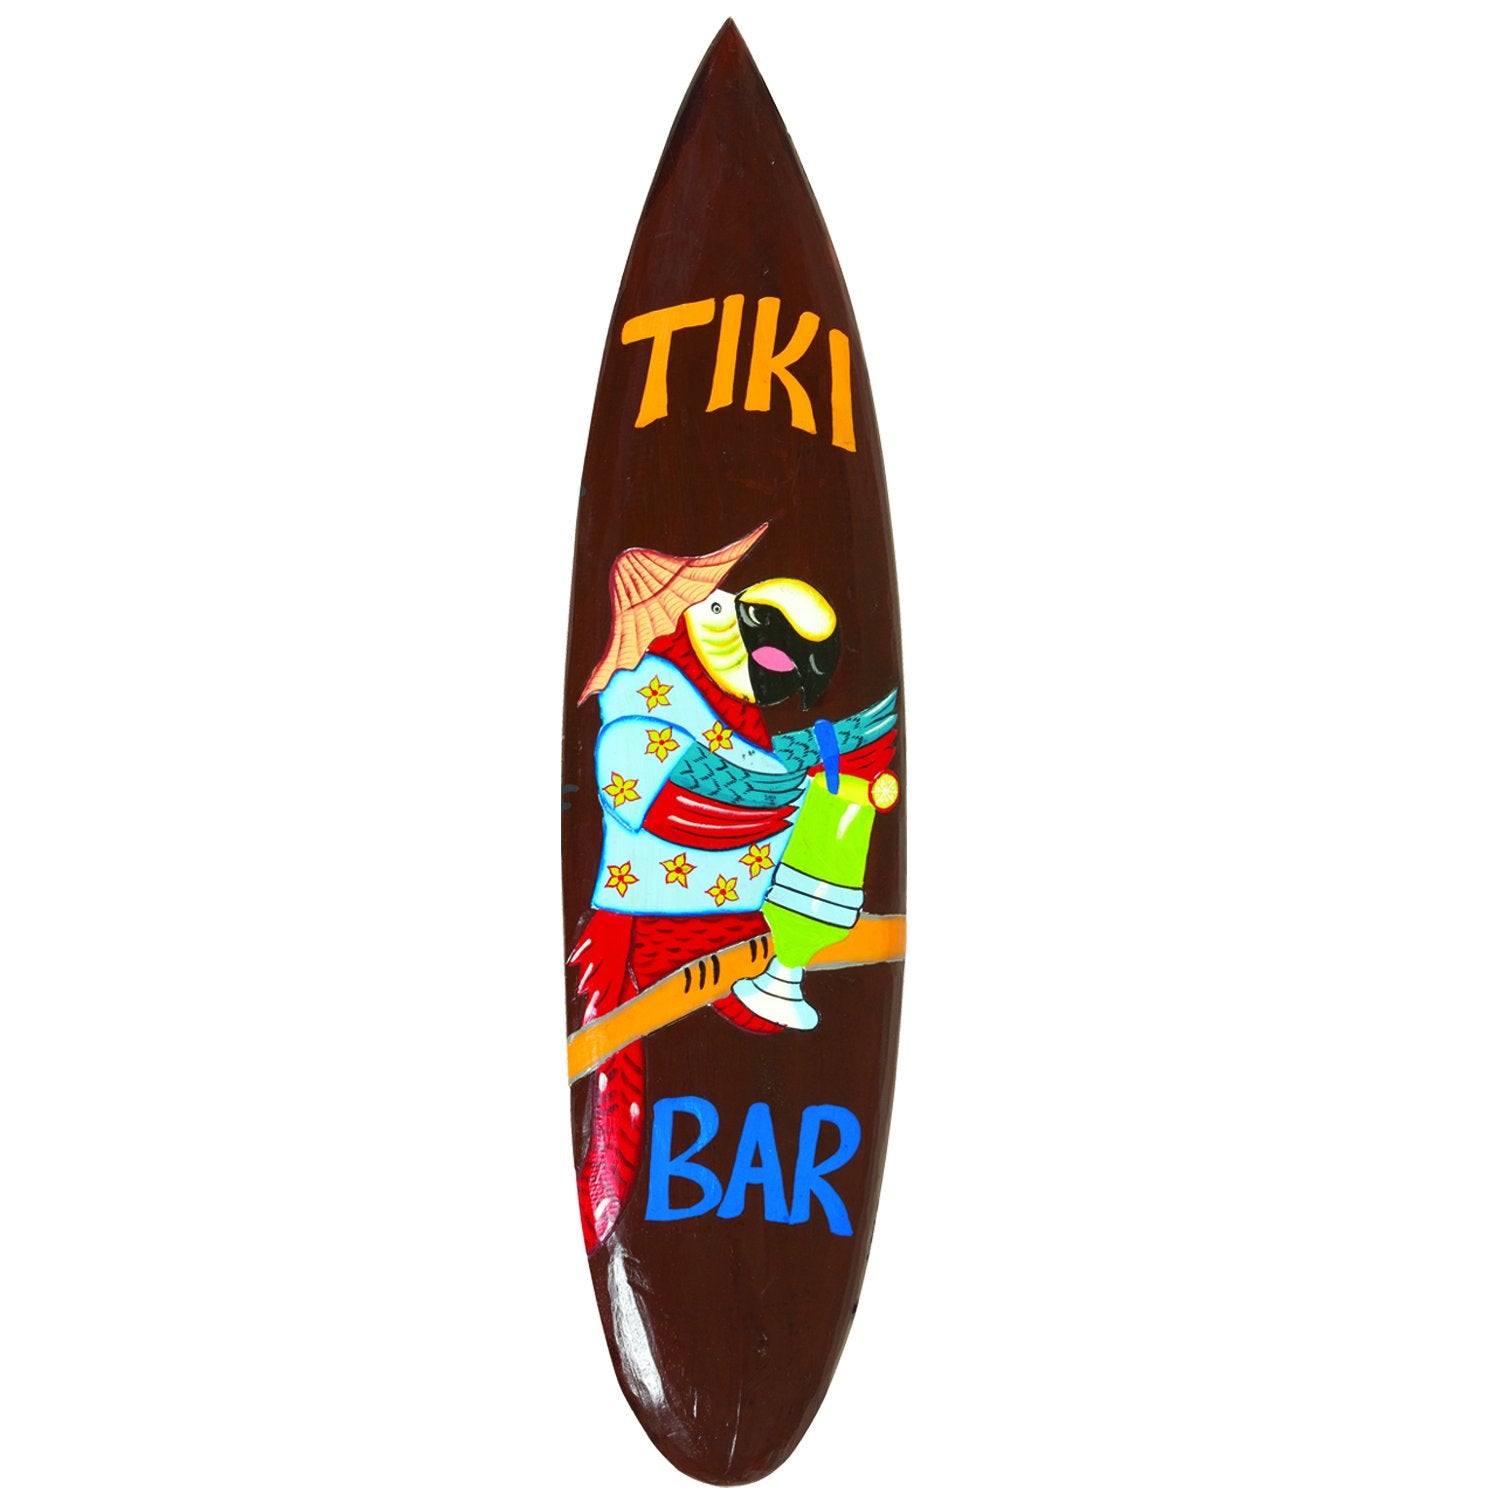 RAM Game Room Parrot “Tiki Bar” Surfboard Acacia Wood Art Sign